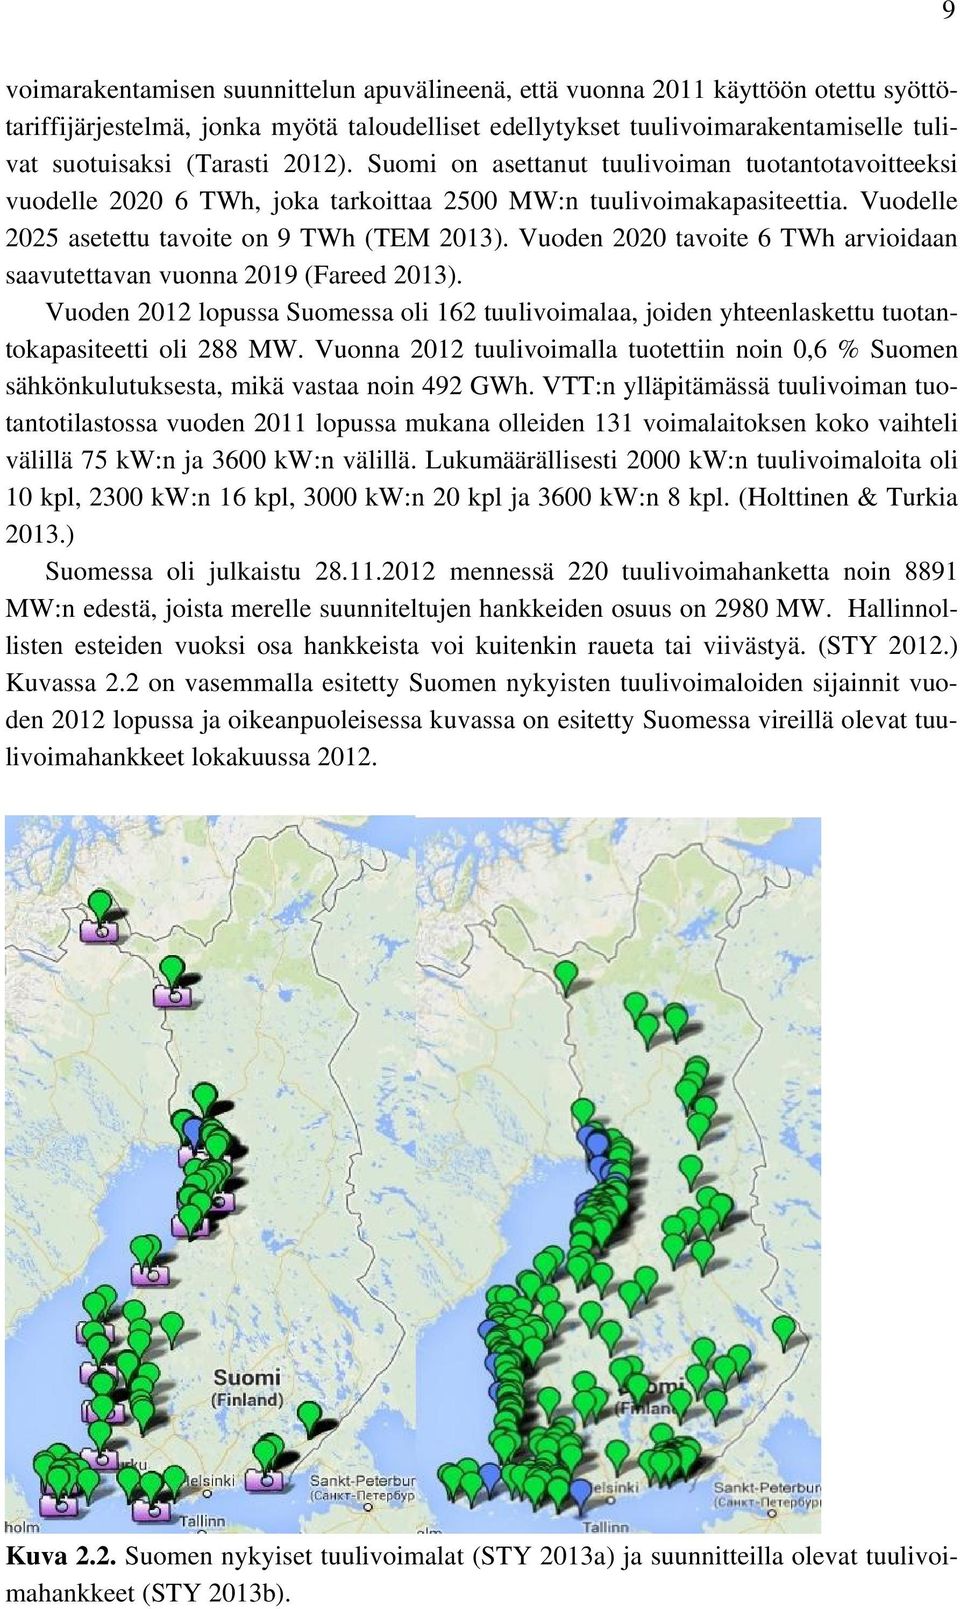 Vuoden 2020 tavoite 6 TWh arvioidaan saavutettavan vuonna 2019 (Fareed 2013). Vuoden 2012 lopussa Suomessa oli 162 tuulivoimalaa, joiden yhteenlaskettu tuotantokapasiteetti oli 288 MW.